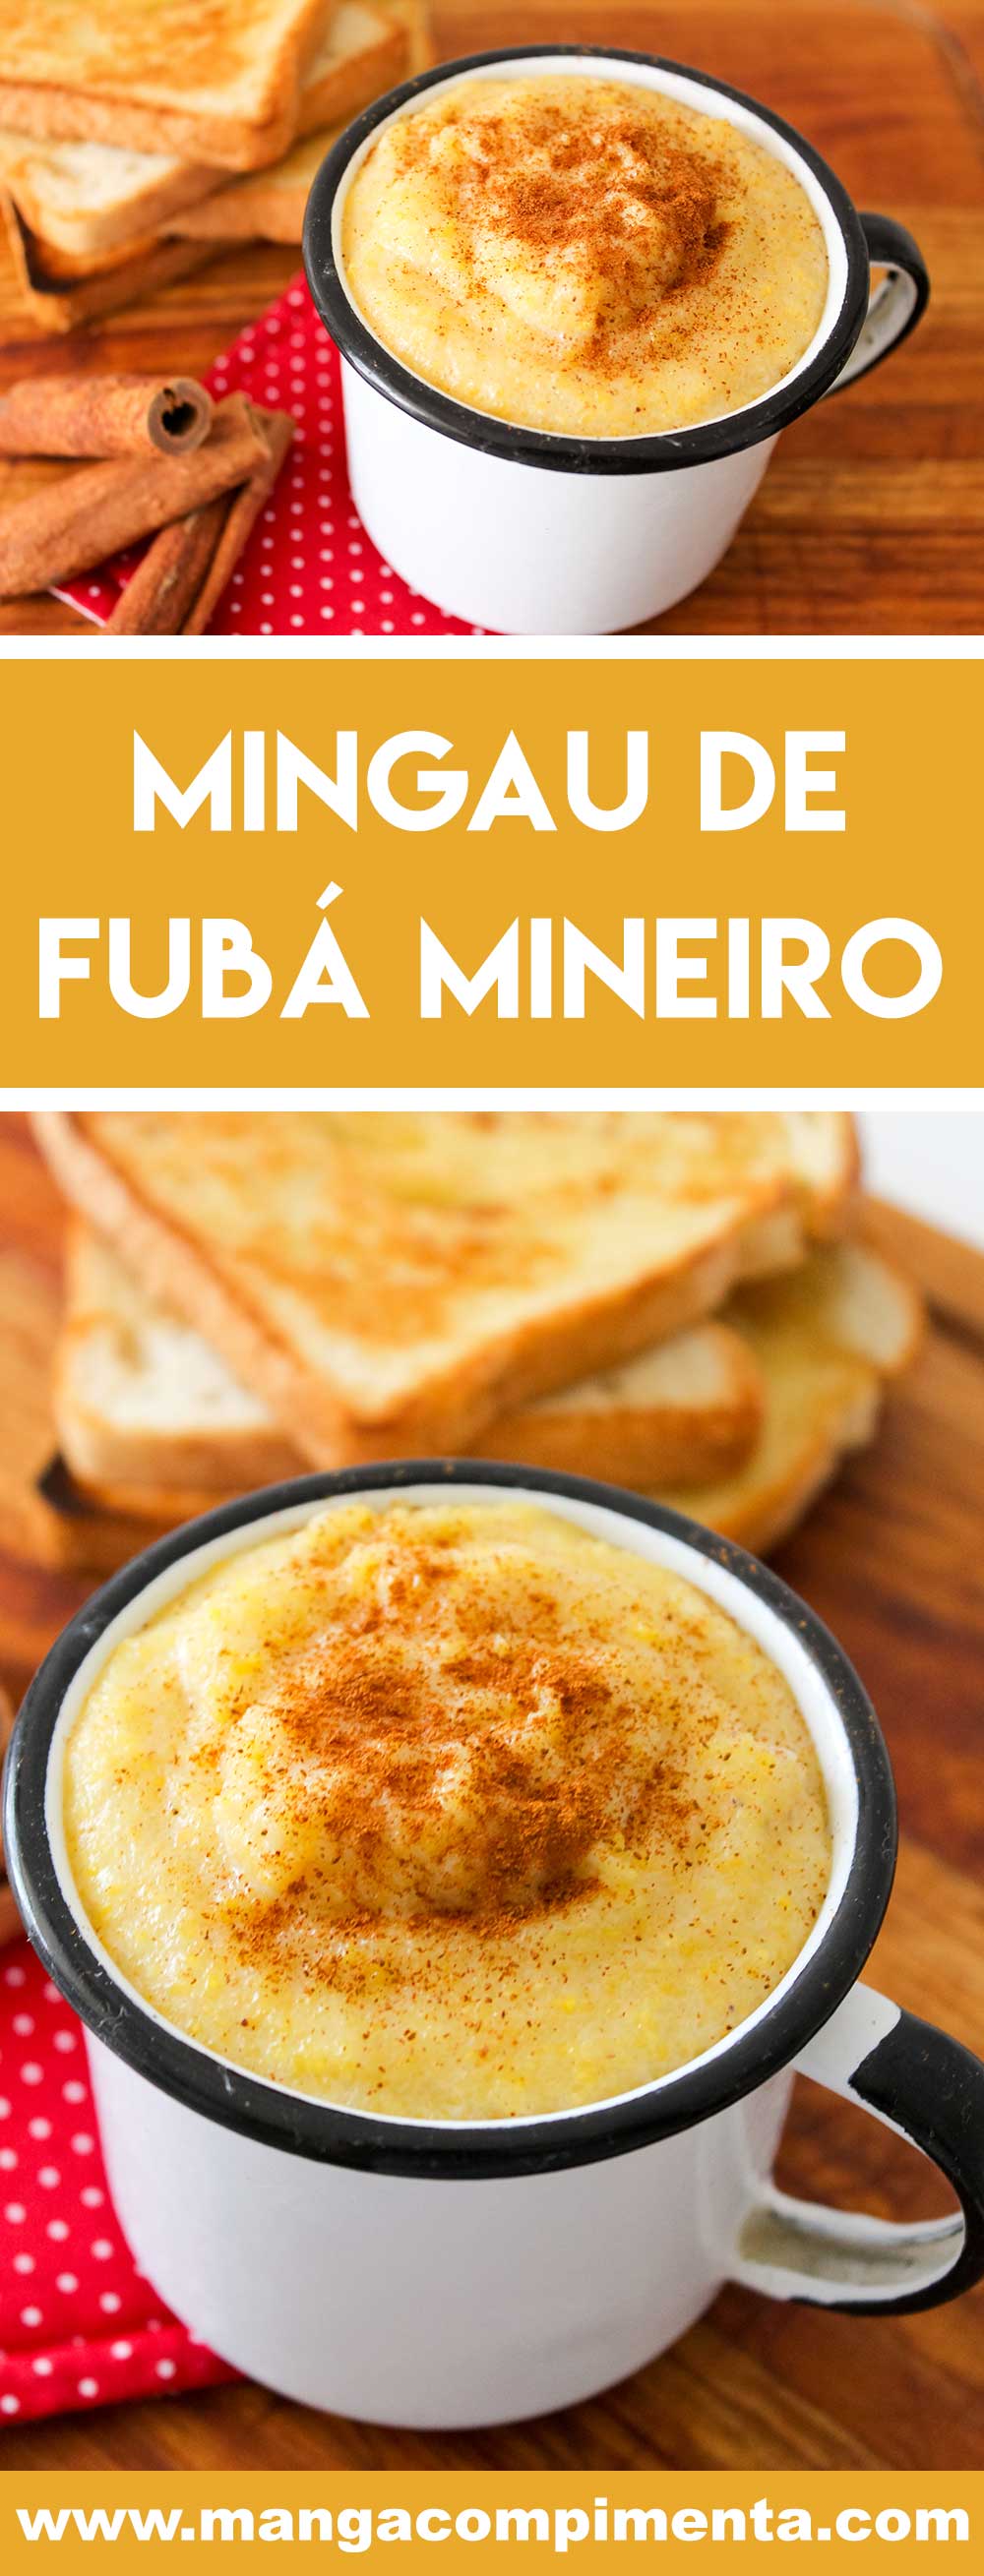 Receita de Mingau de Fubá Mineiro - prepare para os dias frios ou para servir nas festas Junina ou Julina.